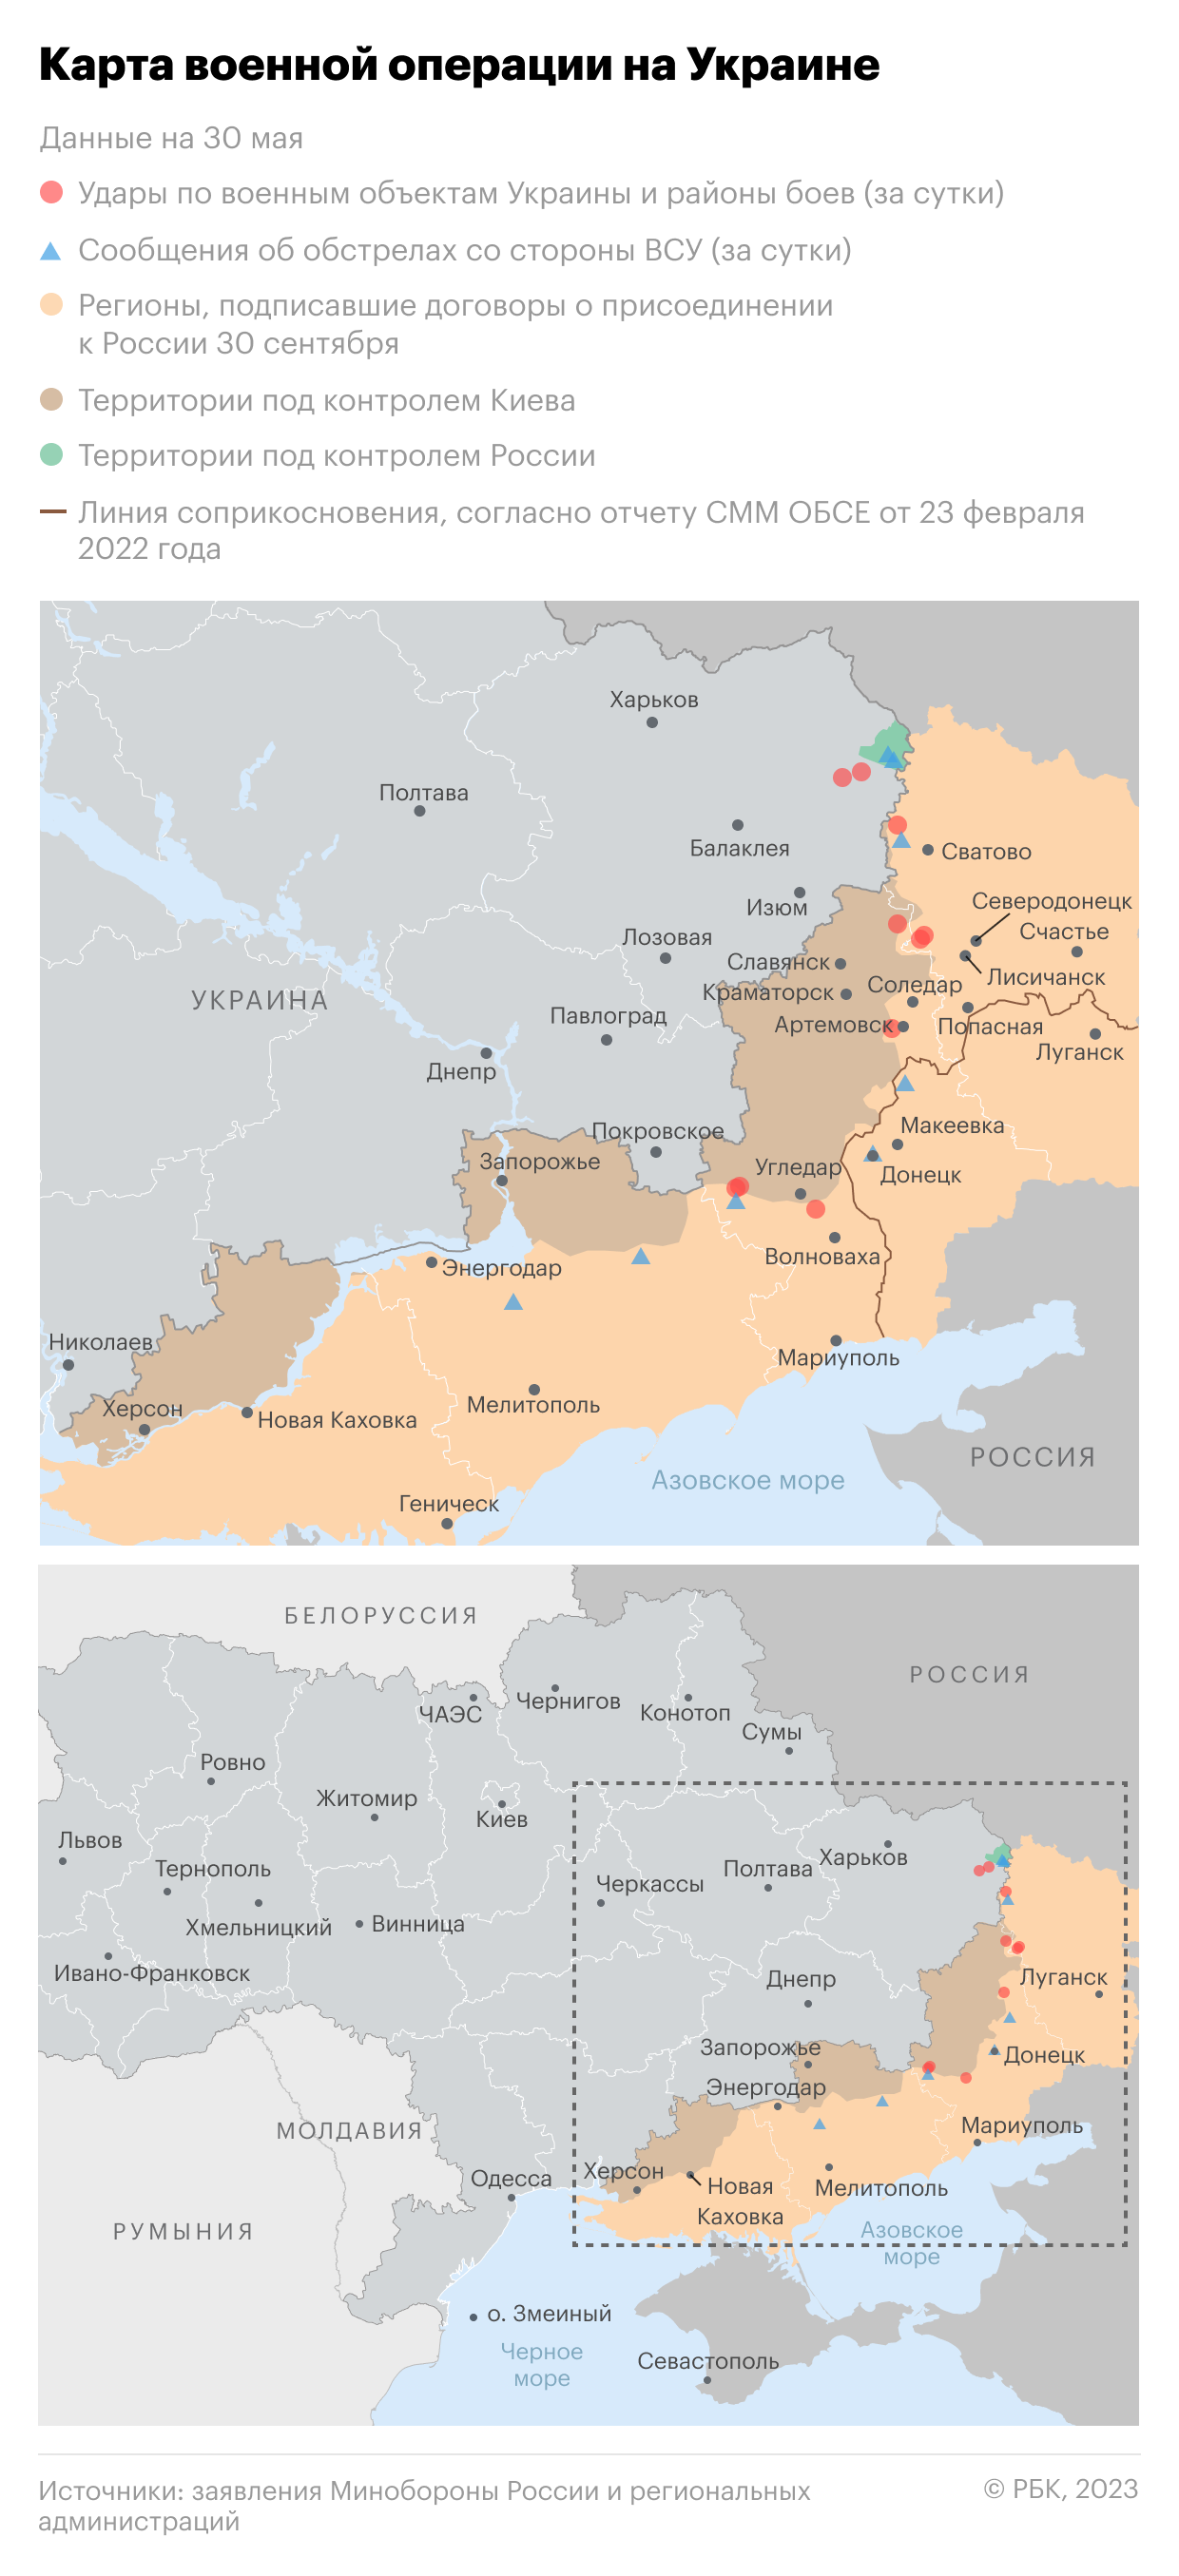 Кадыров предложил начать второй этап спецоперации «по всей Украине»